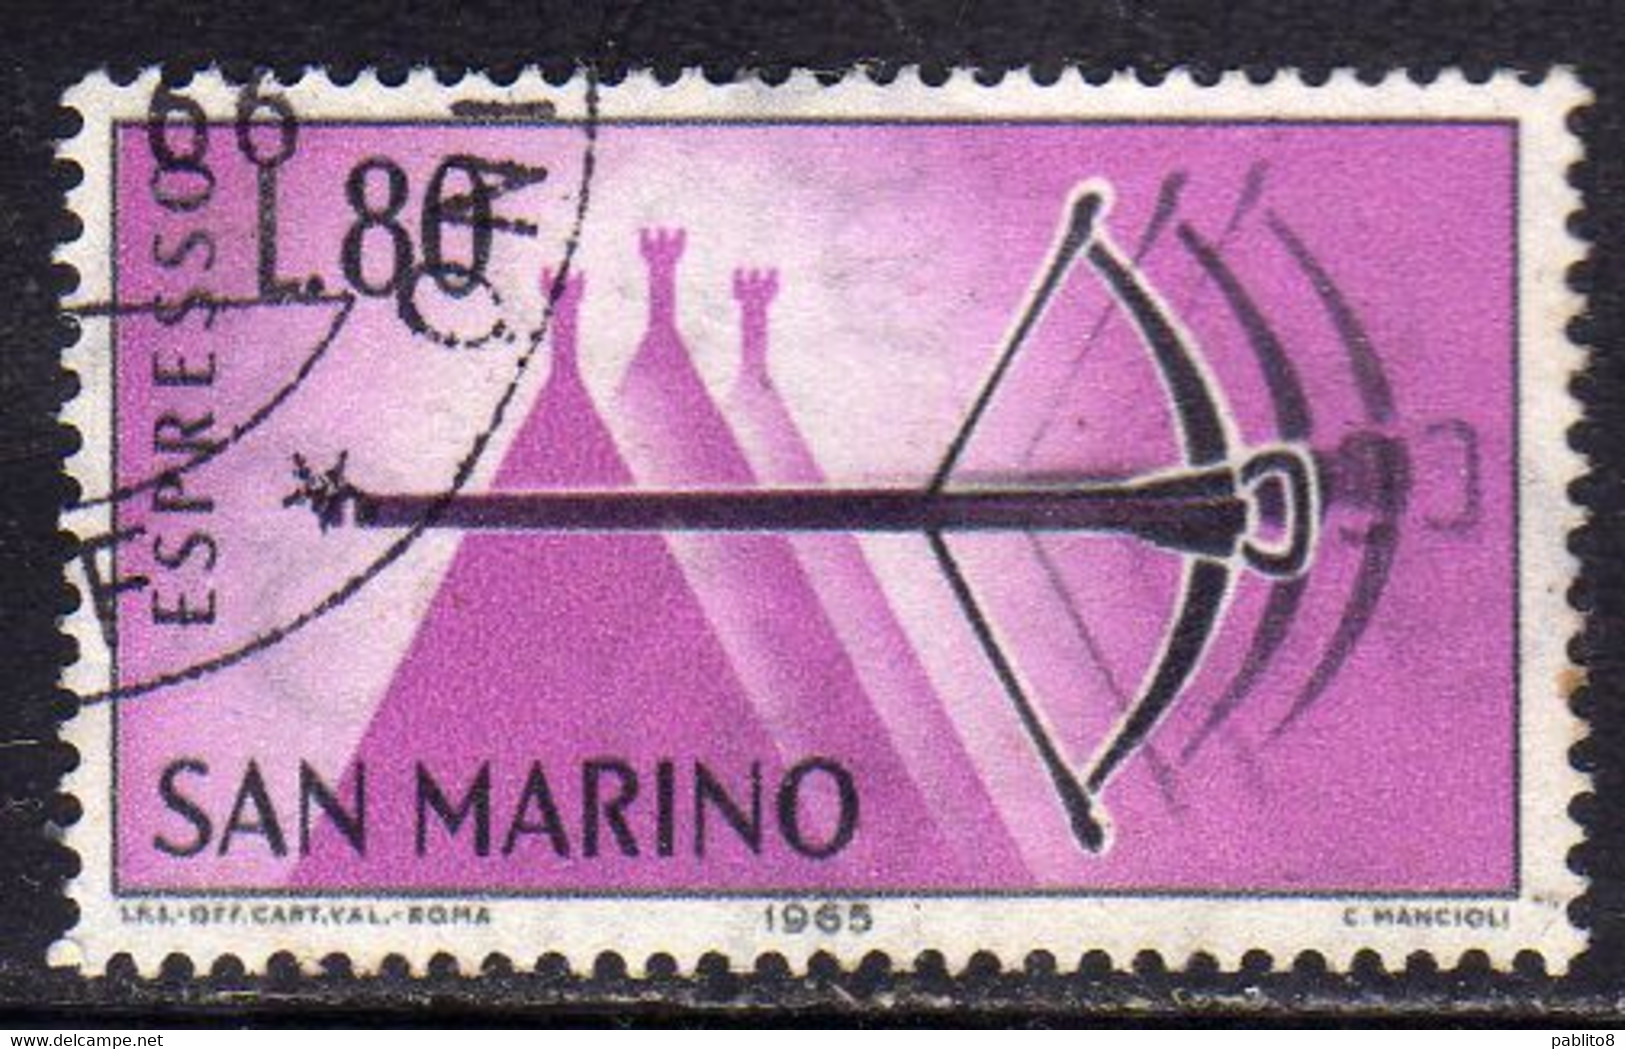 REPUBBLICA DI SAN MARINO 1966 ESPRESSI SPECIAL DELIVERY ESPRESSO BALESTRA LIRE 80 USATO USED OBLITERE' - Timbres Express